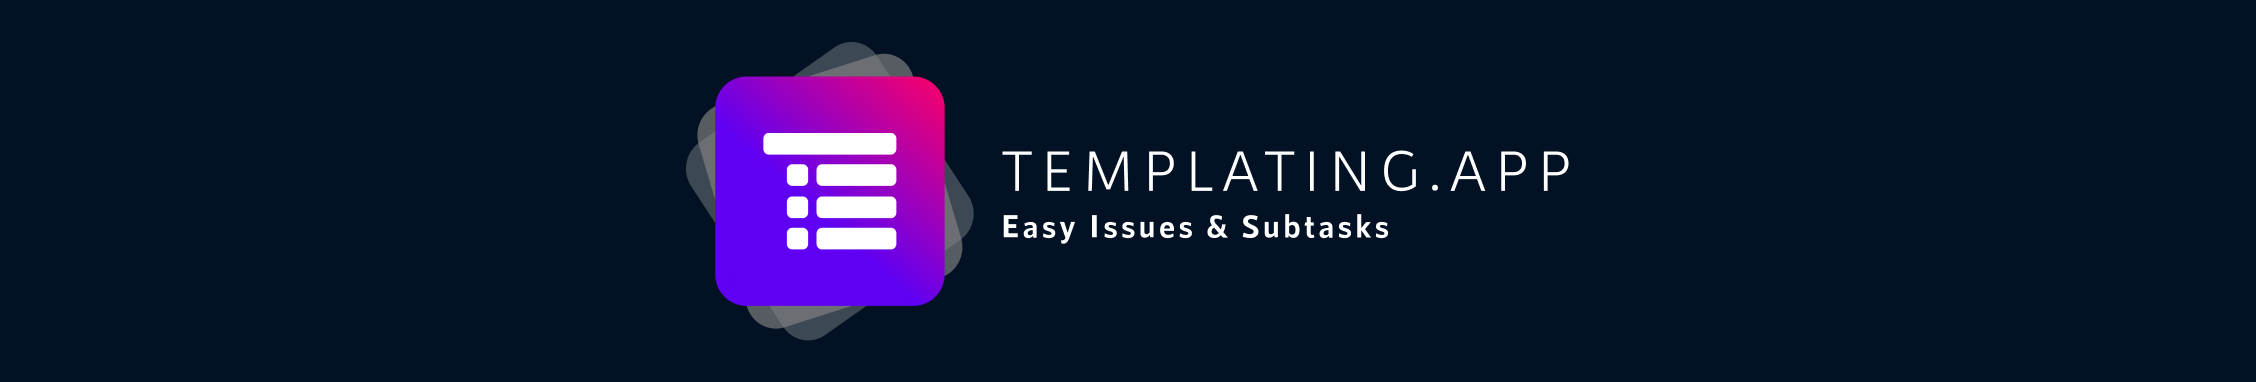 Templating.app Header